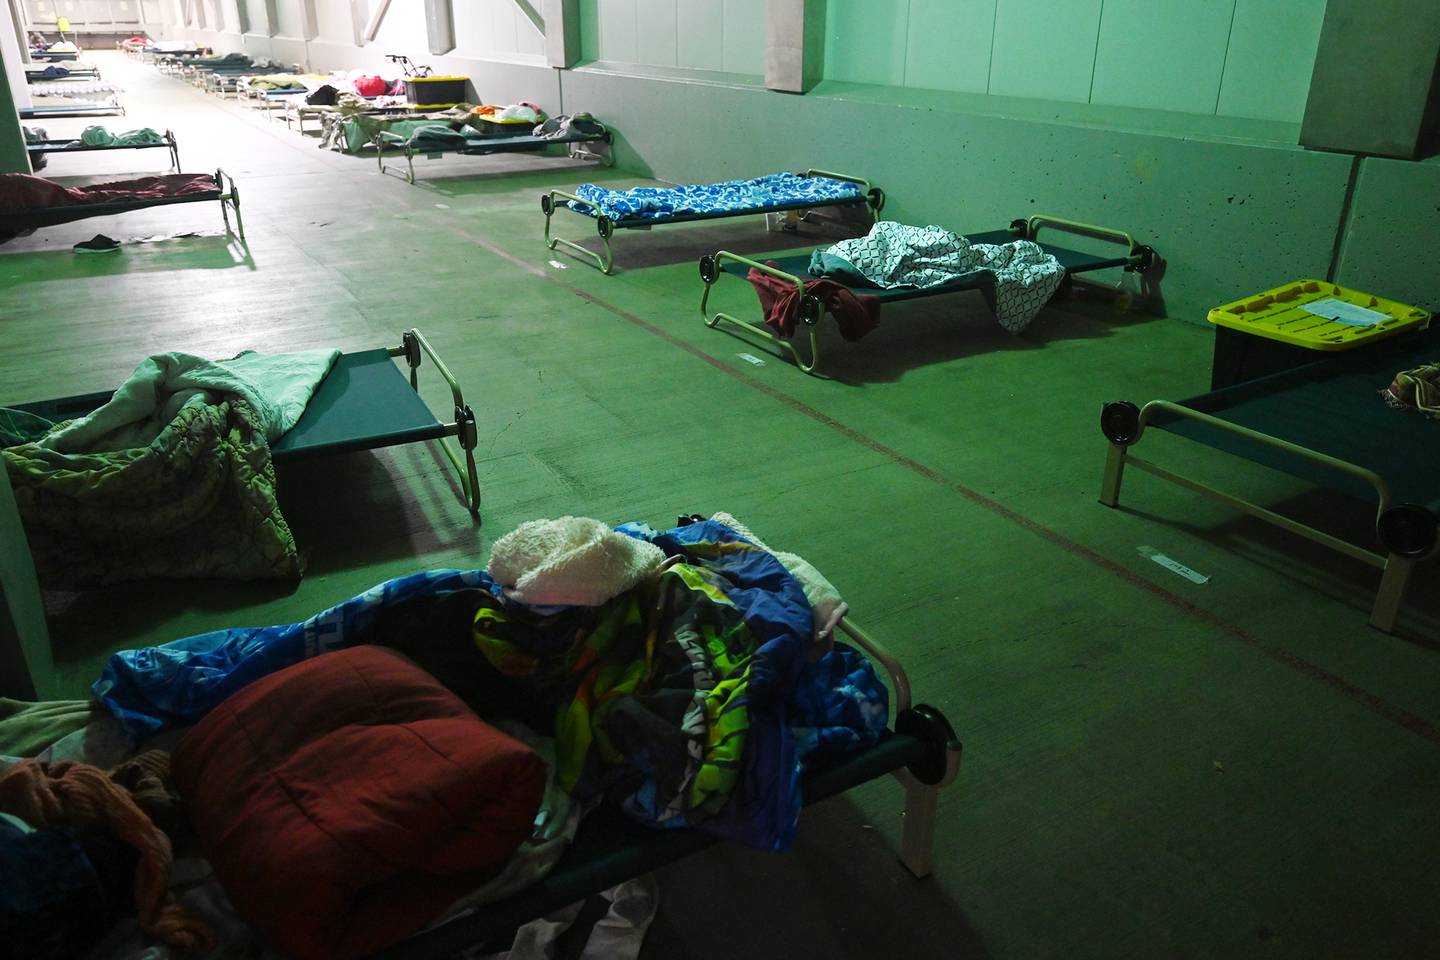 Sullivan Arena homeless shelter